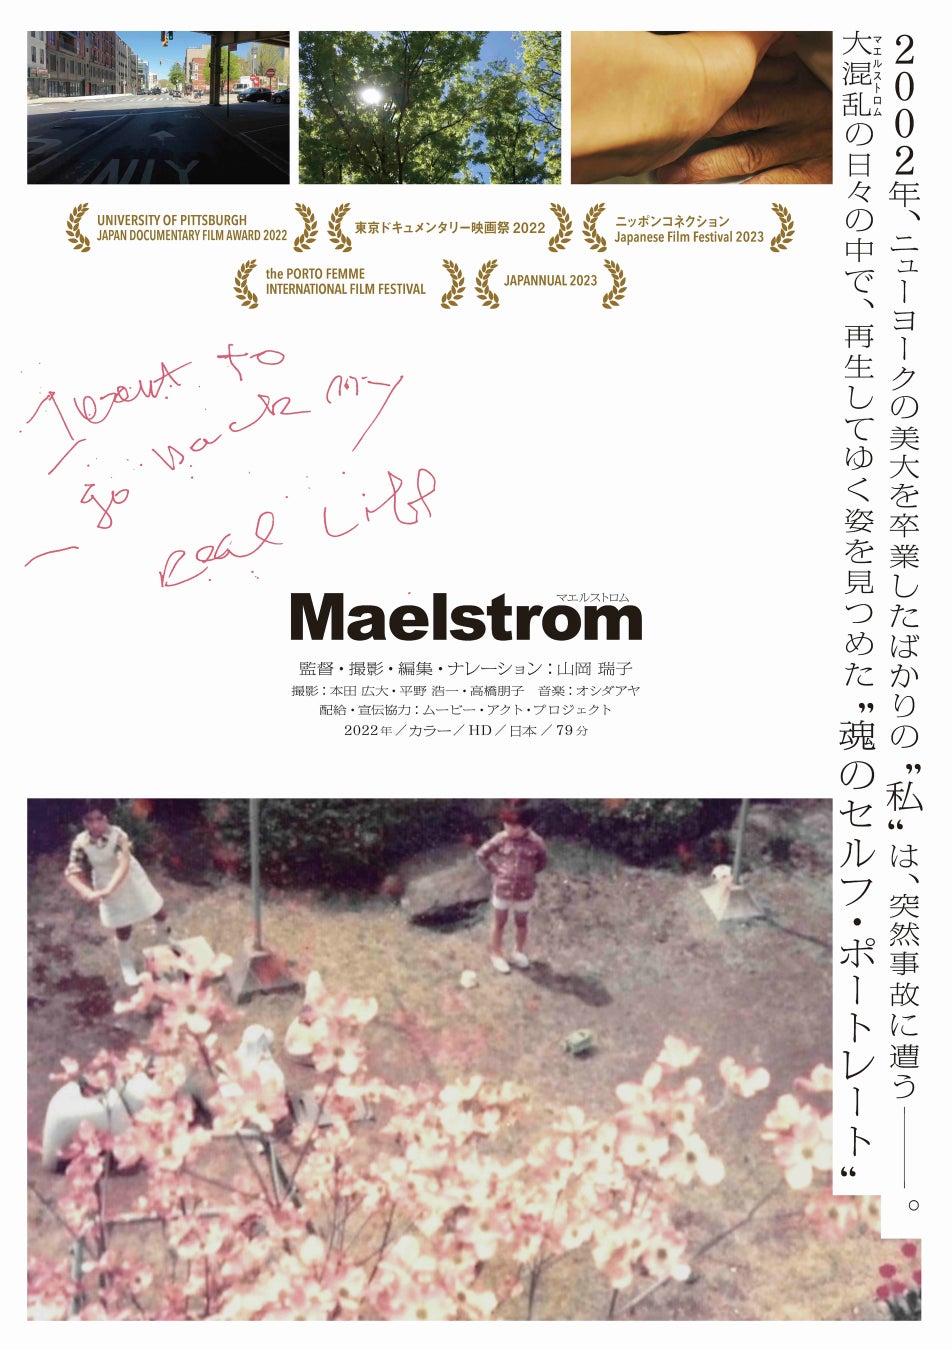 第97回キネマ旬報ベスト・テン 文化映画部門5位:ドキュメンタリー映画『Maelstrom マエルストロム』東京・アップリンク吉祥寺での凱旋上映が2024年5月10日に決定！コメントも到着!!